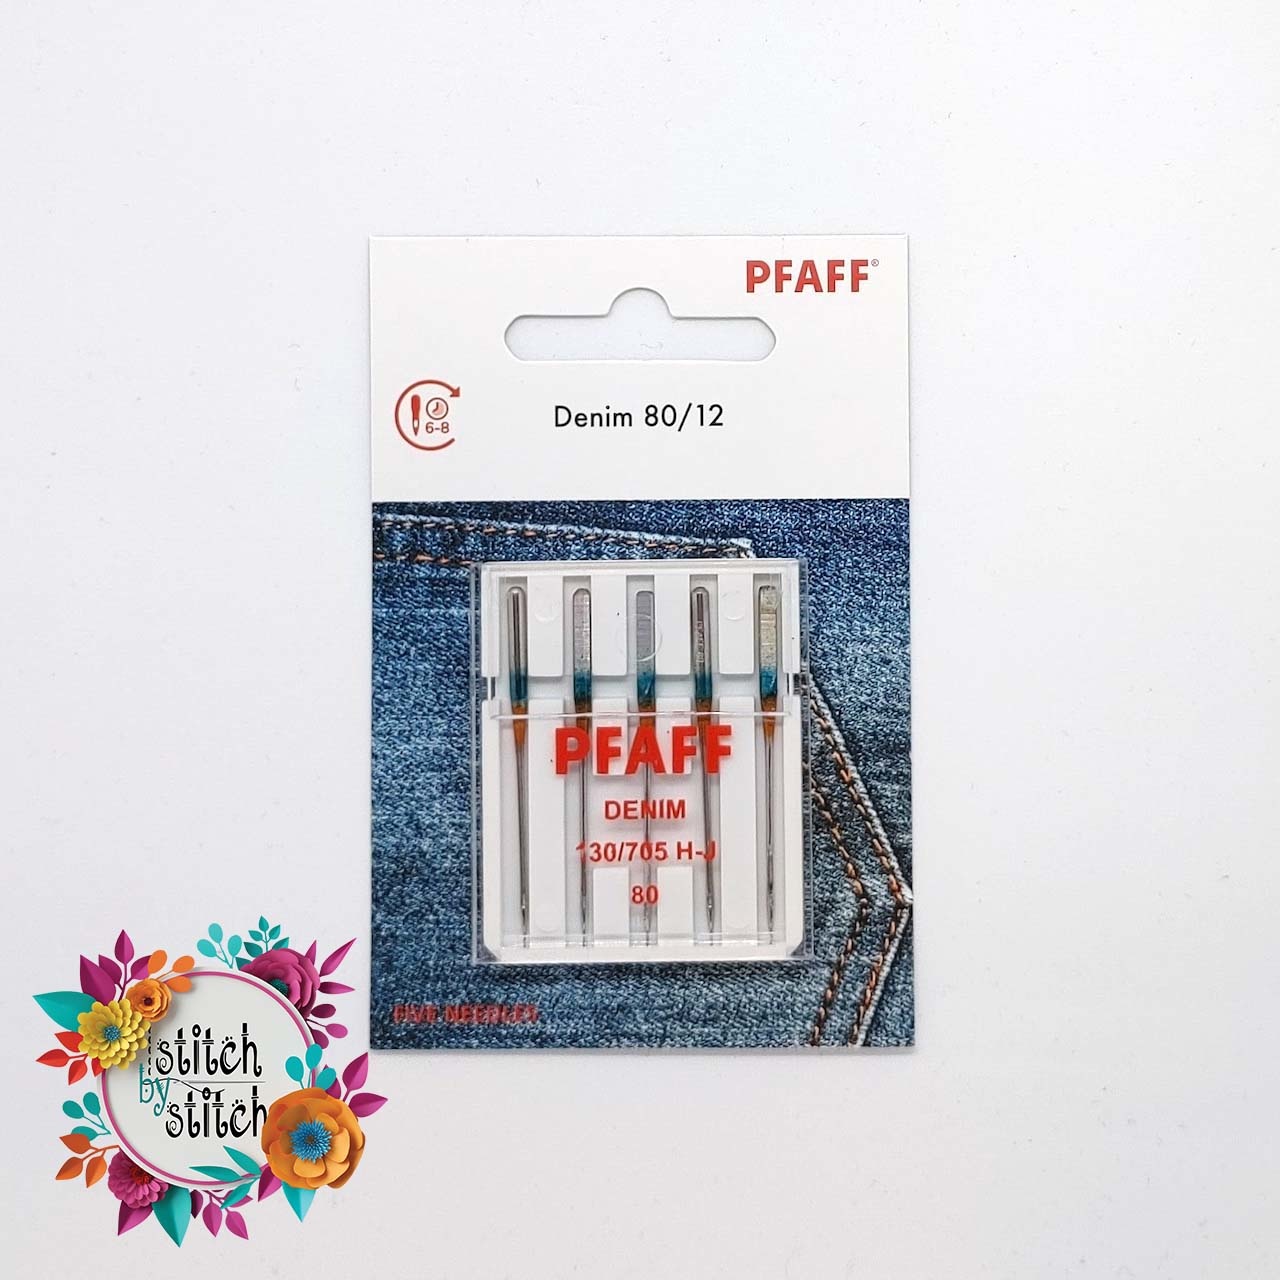 PFAFF Pfaff Denim Needle - Size 80/12 5 pack